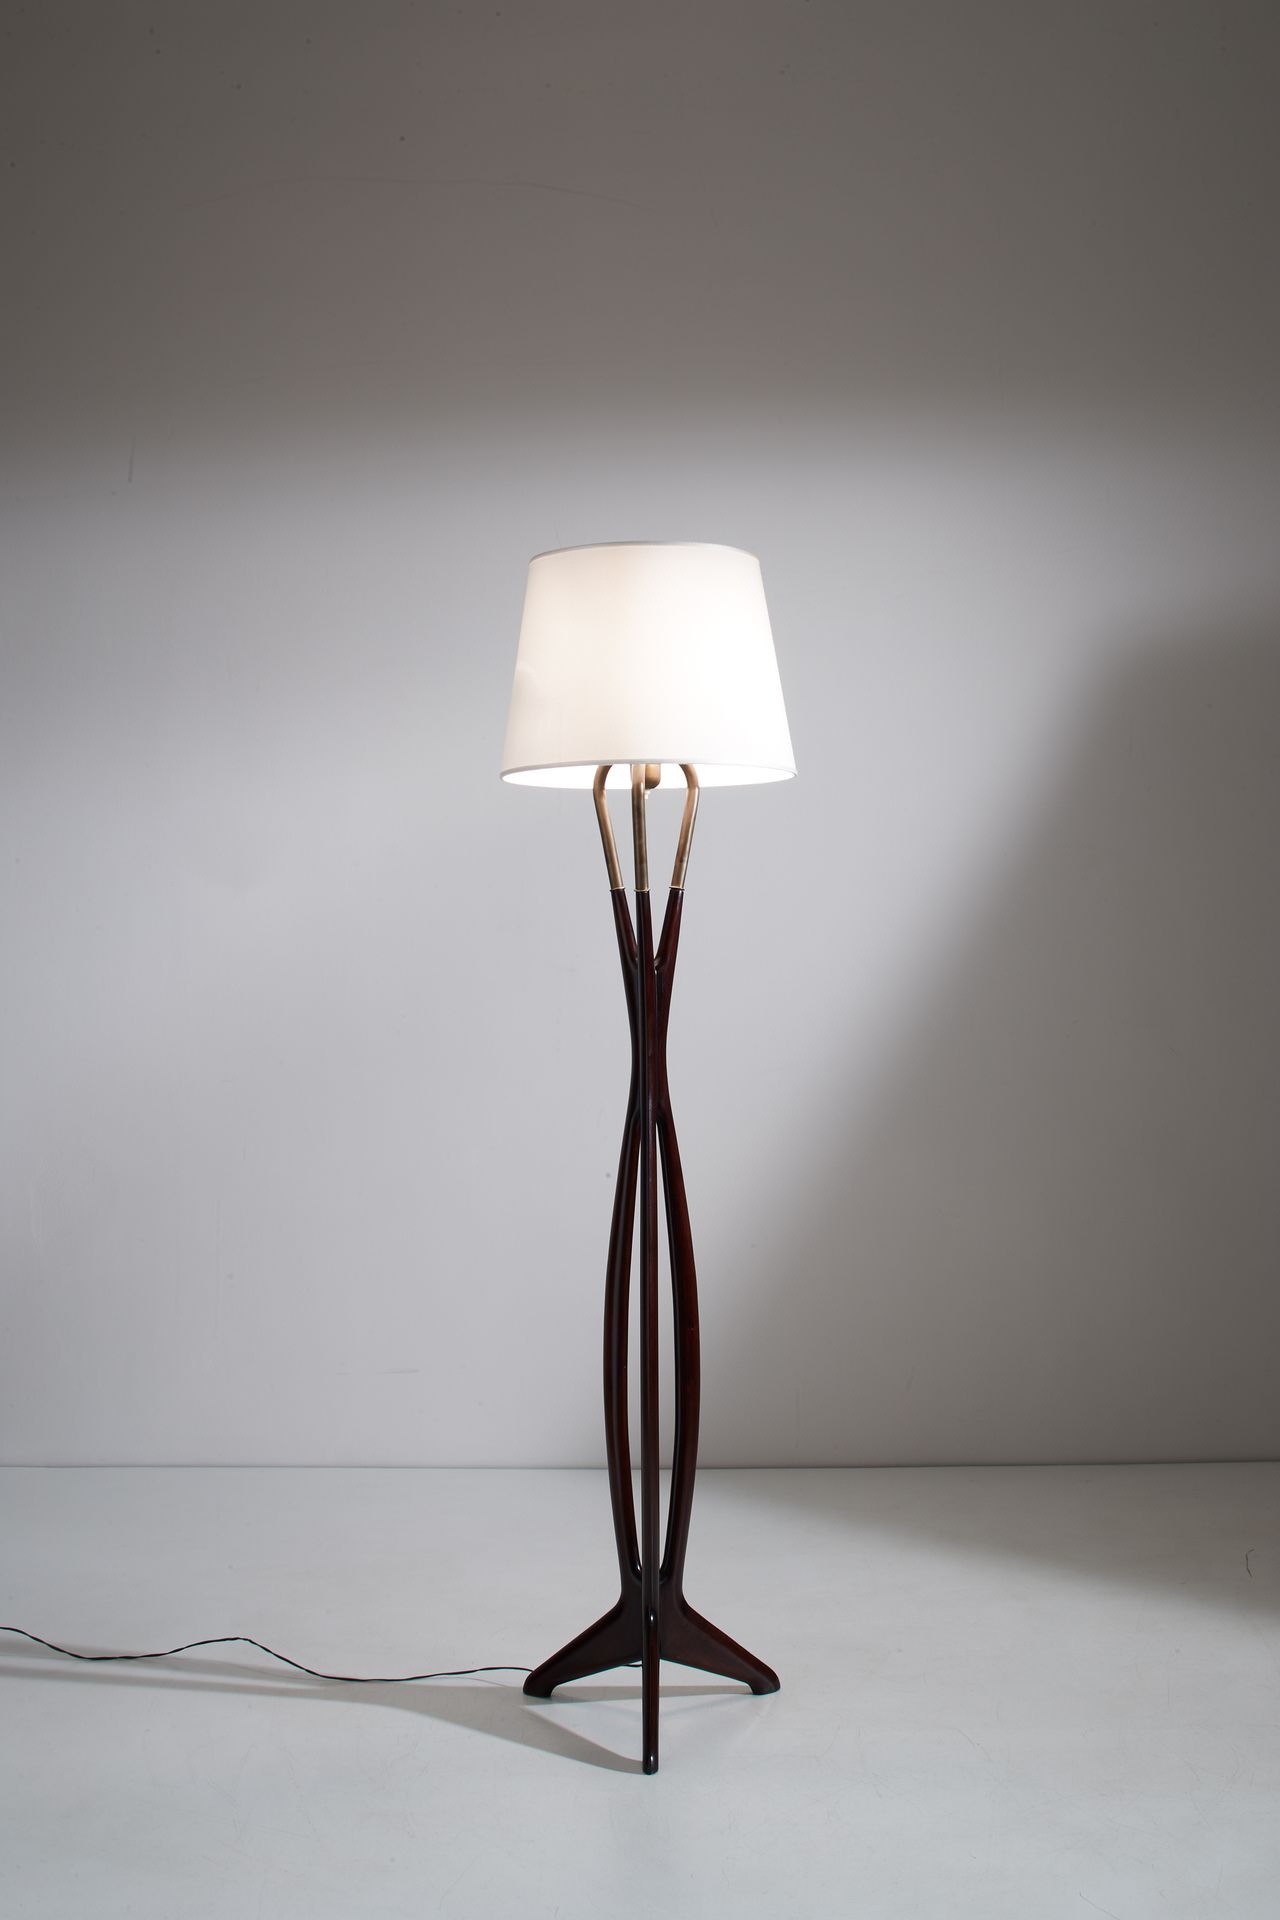 CESARE LACCA 落地灯。染色木头，黄铜，油漆铝。意大利 1950年代。
高176厘米
一盏落地灯，由C.LACCA



整体状况良好。小划痕，日常使&hellip;